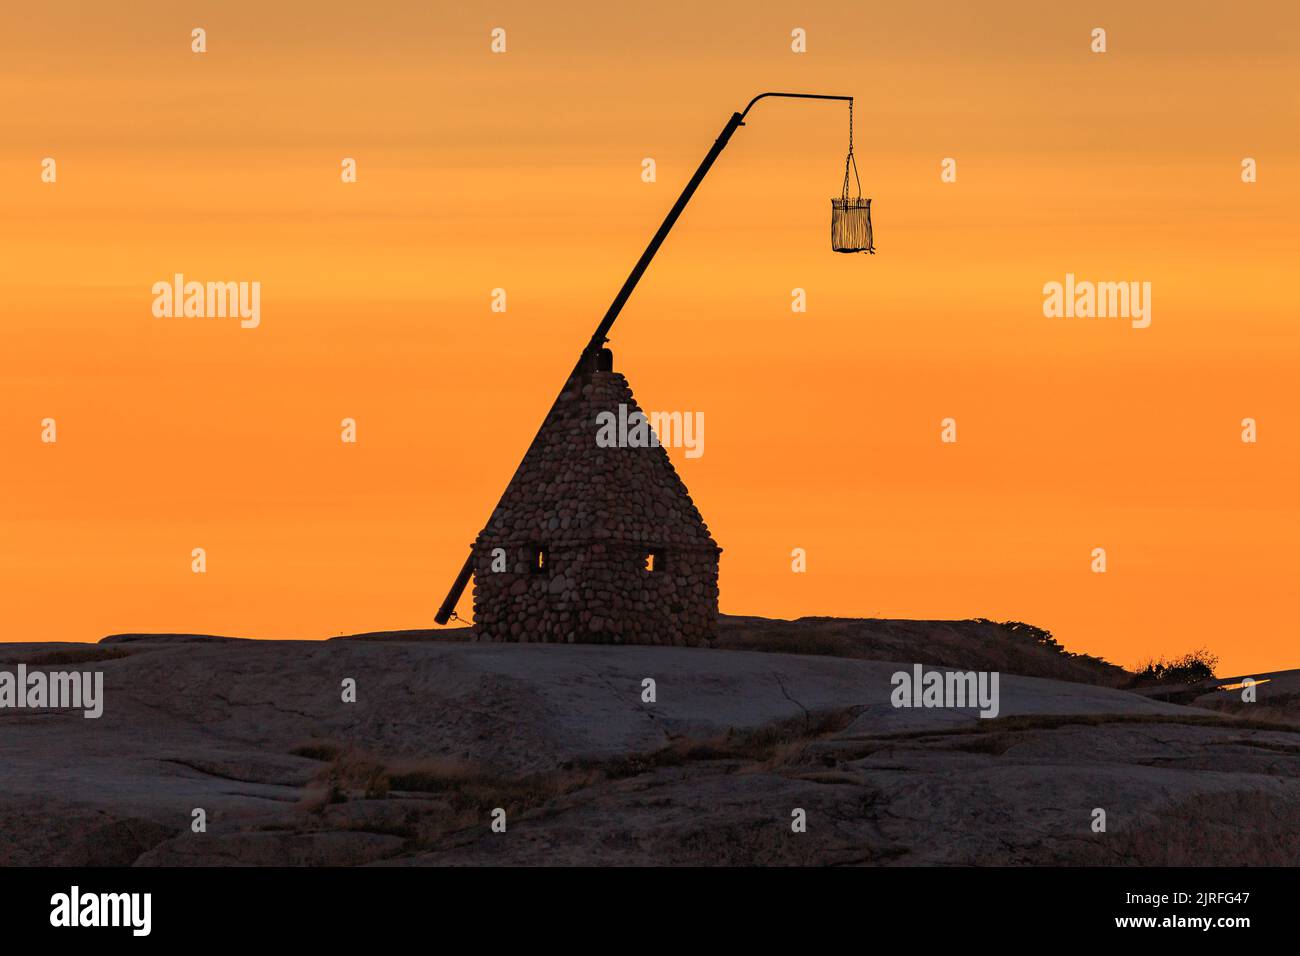 Coucher de soleil à la fin du monde - Vippefyr ancien phare à Verdens Ende en Norvège Banque D'Images